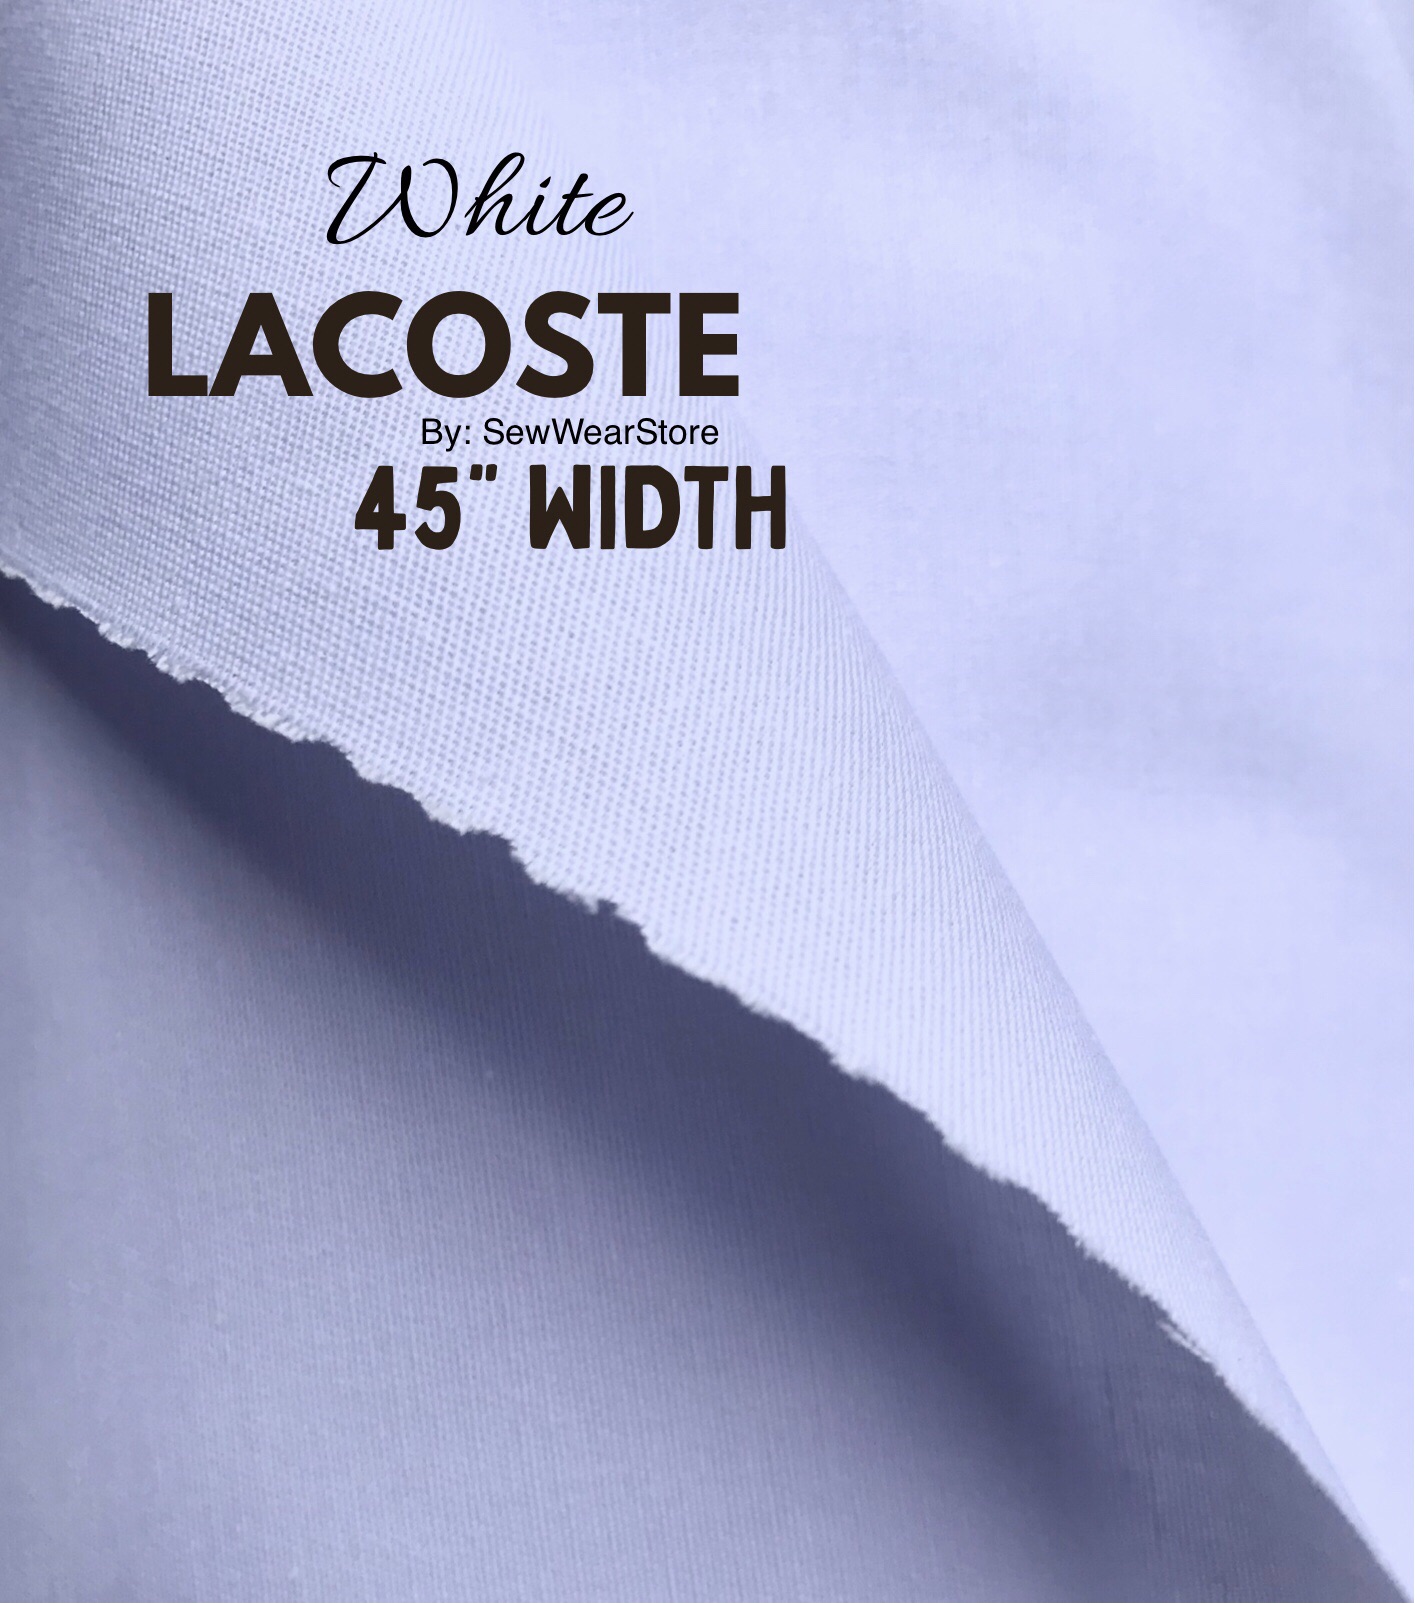 Lacost Fabric Swiss Cotton 45” width by SewWearStore